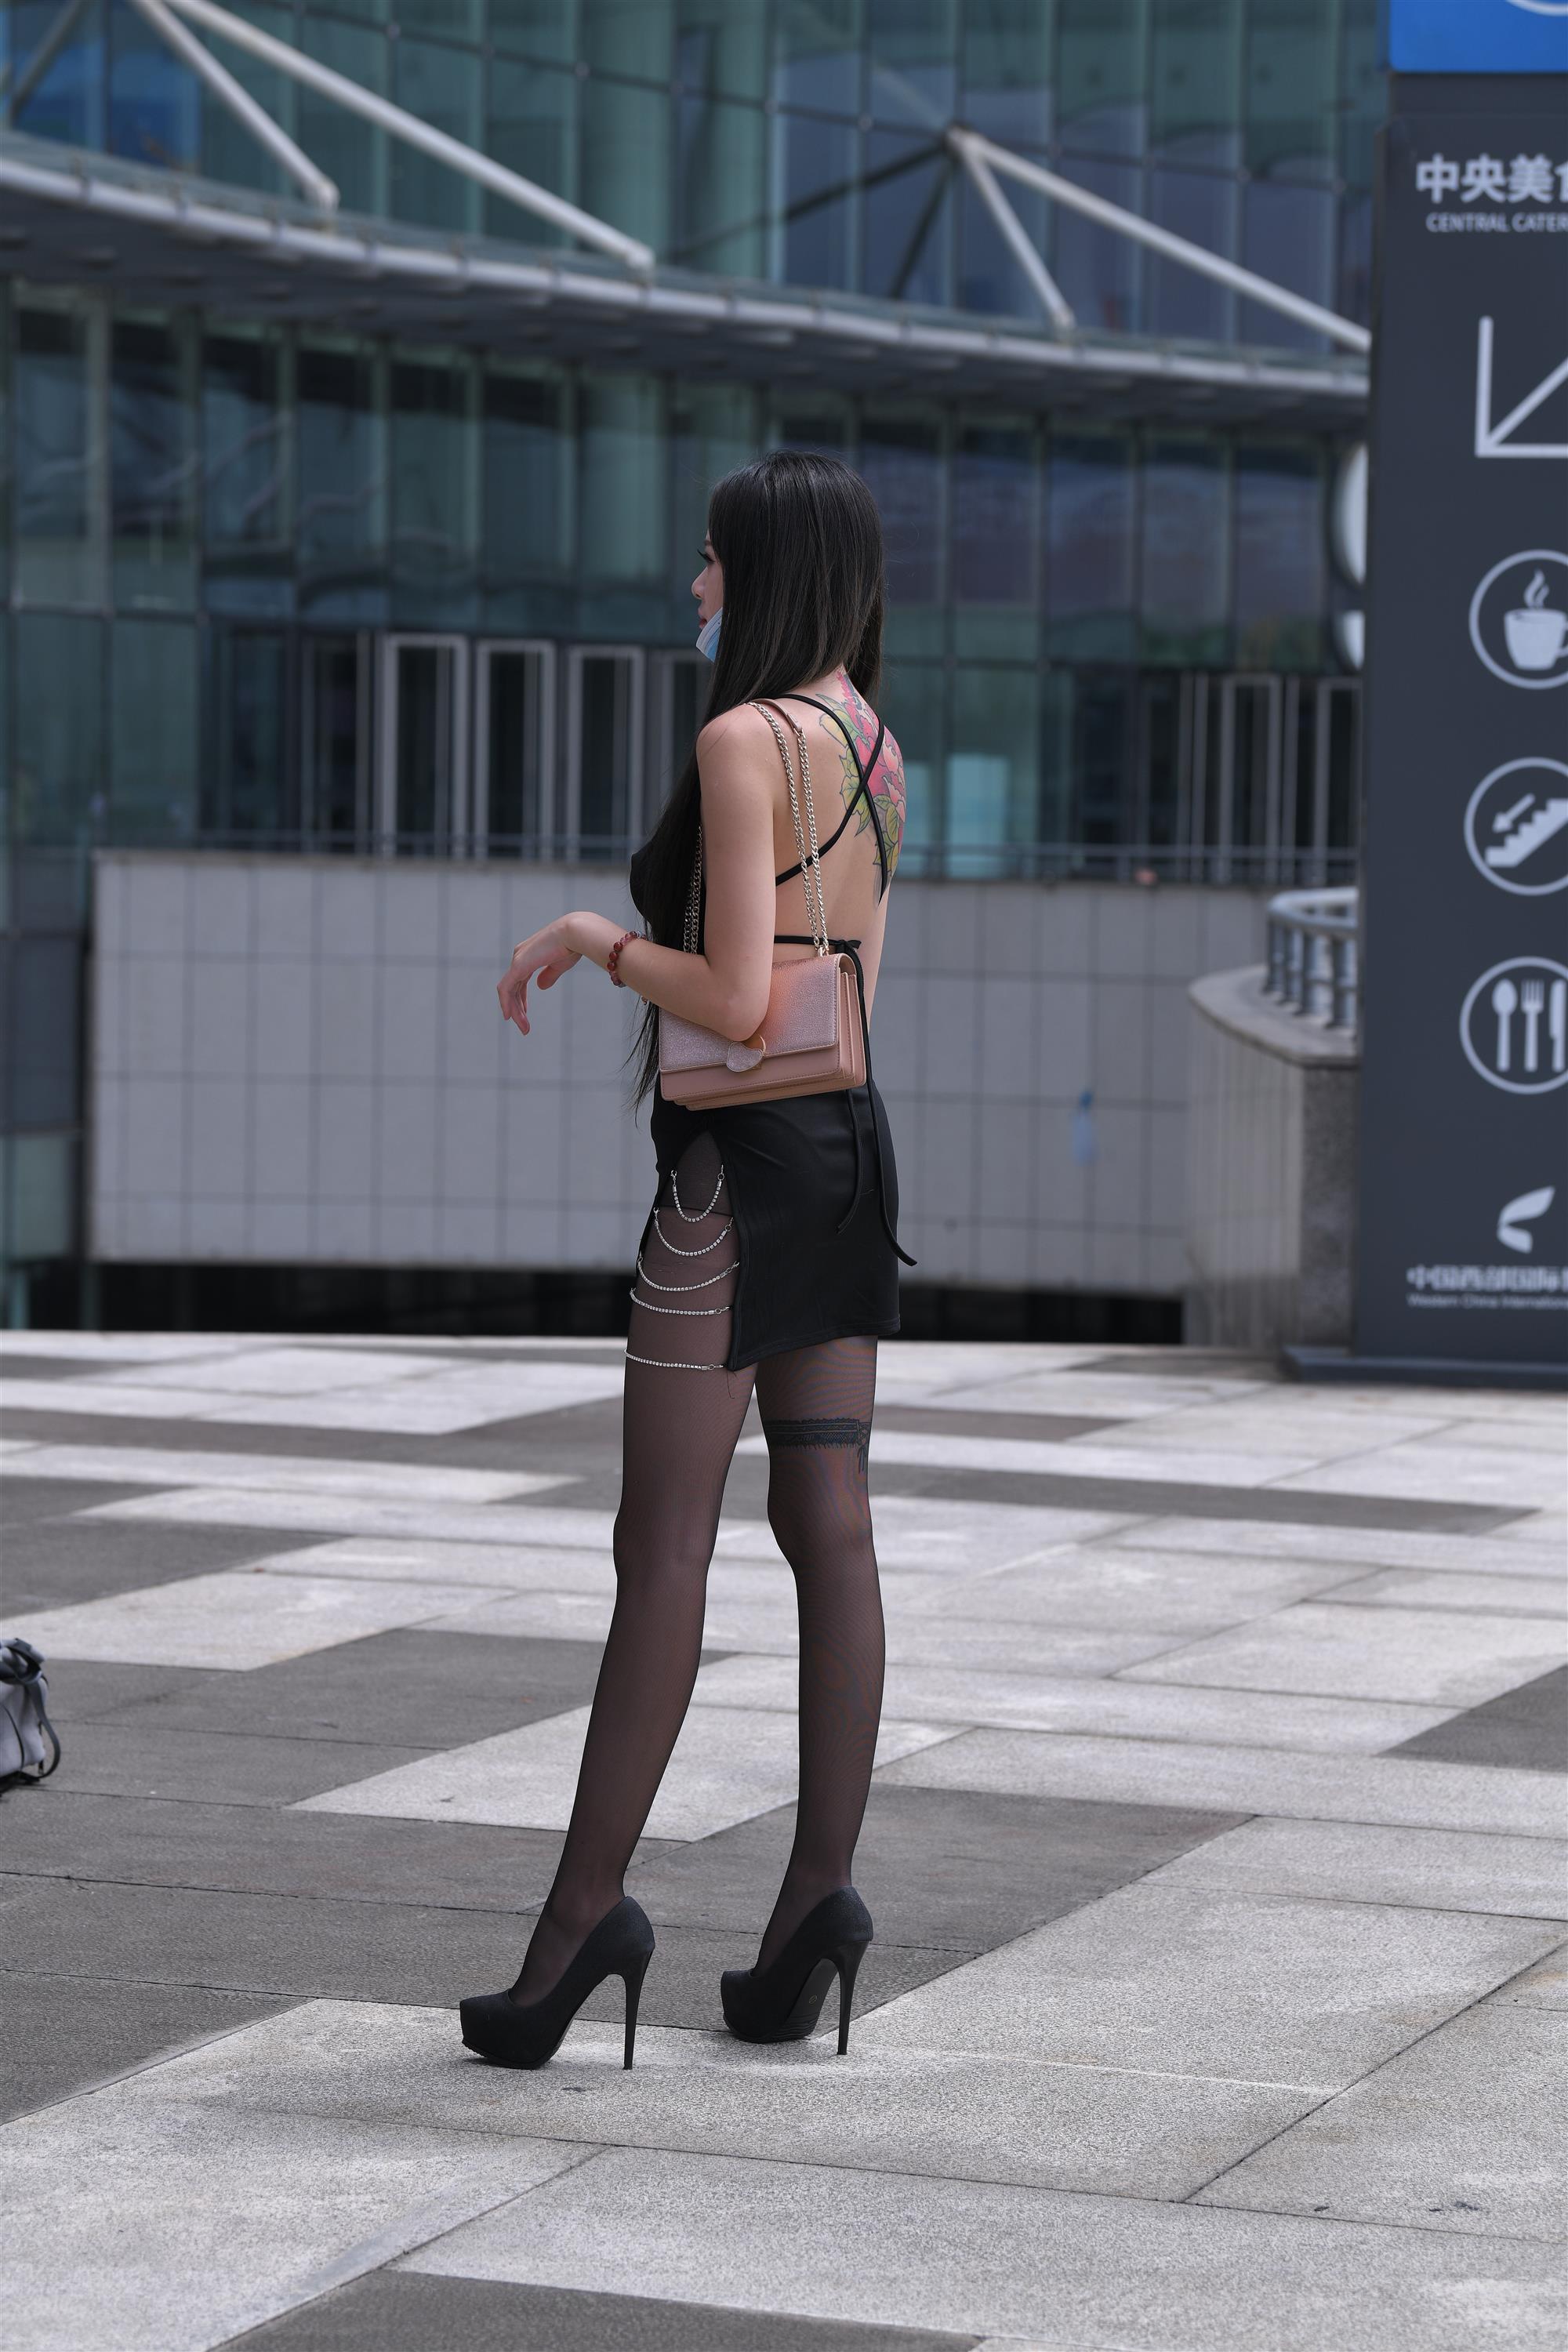 Street black stockings and high heels - 31.jpg